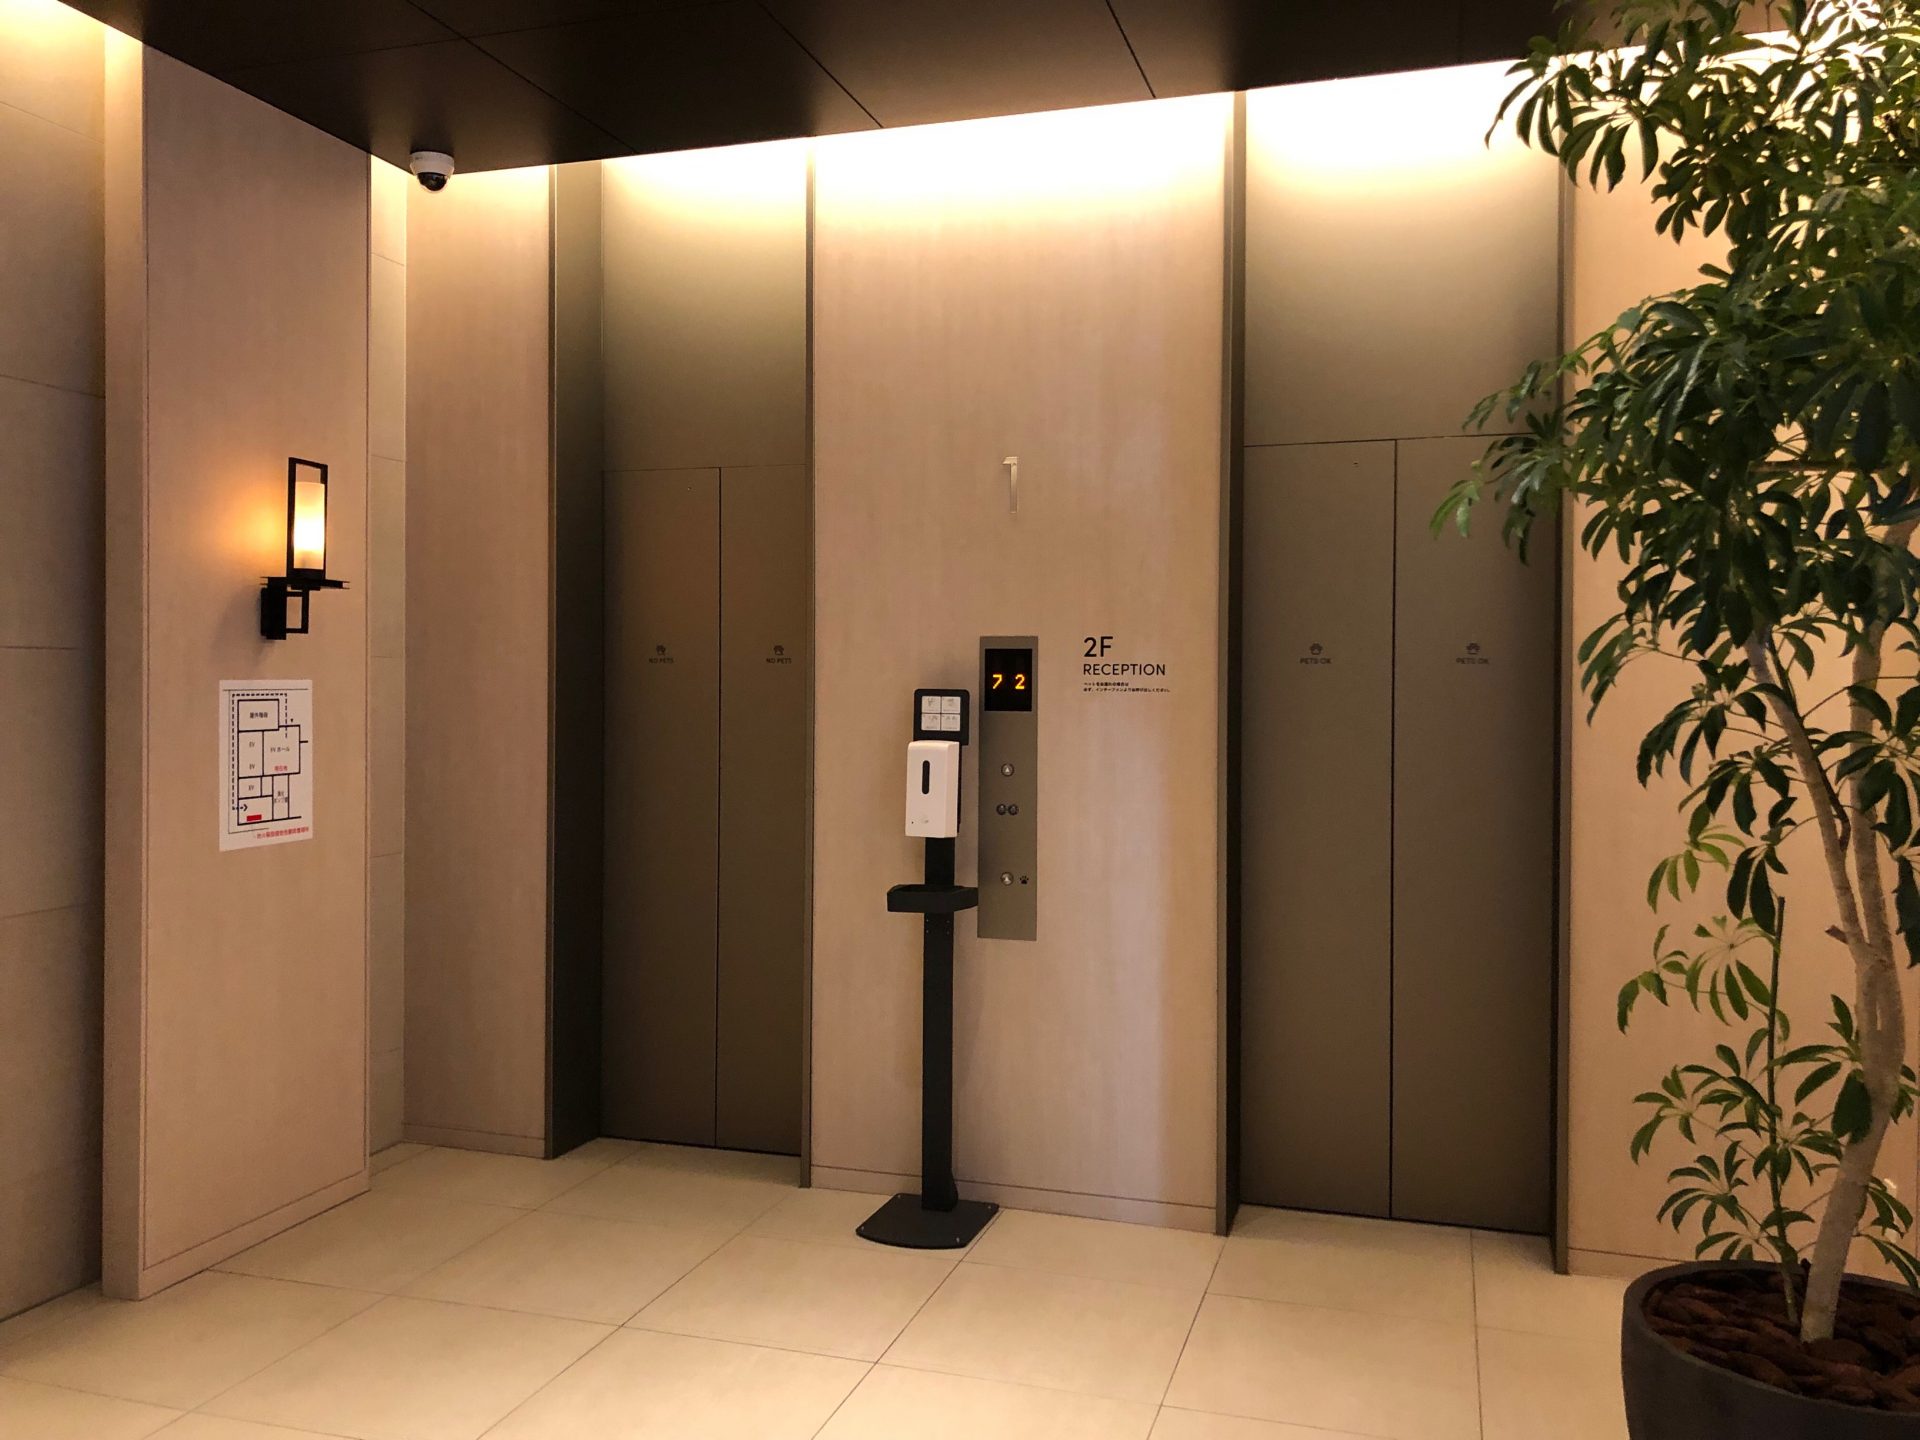 ビジネスエアポート京橋 エレベーターで２Fへ上がると受付